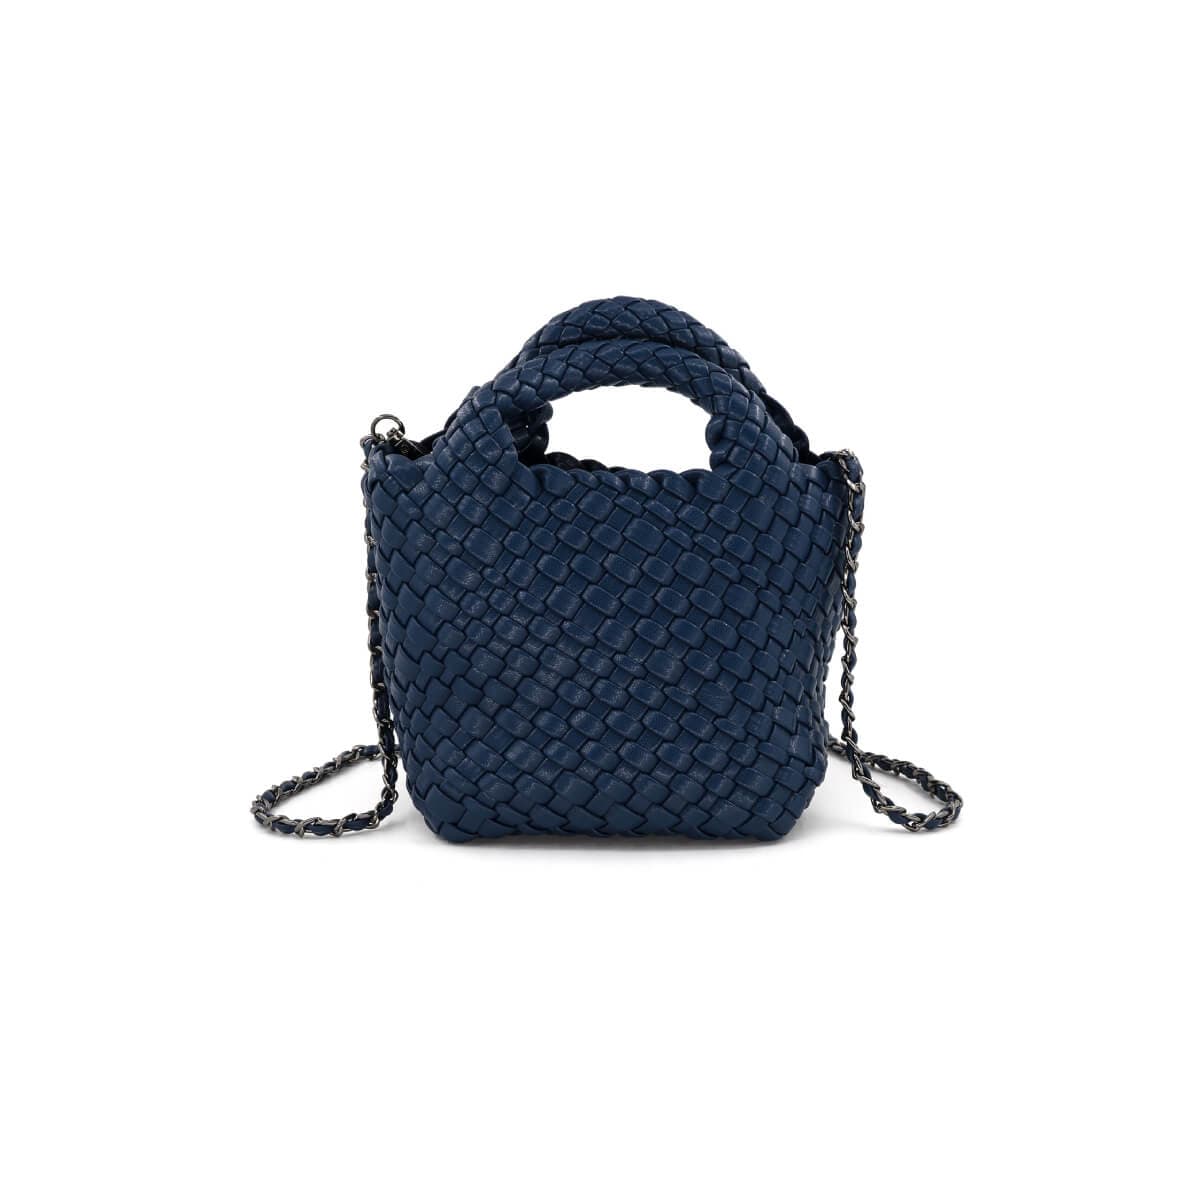 FWRD Renew Chanel Denim Chain Tote Bag in Medium Blue